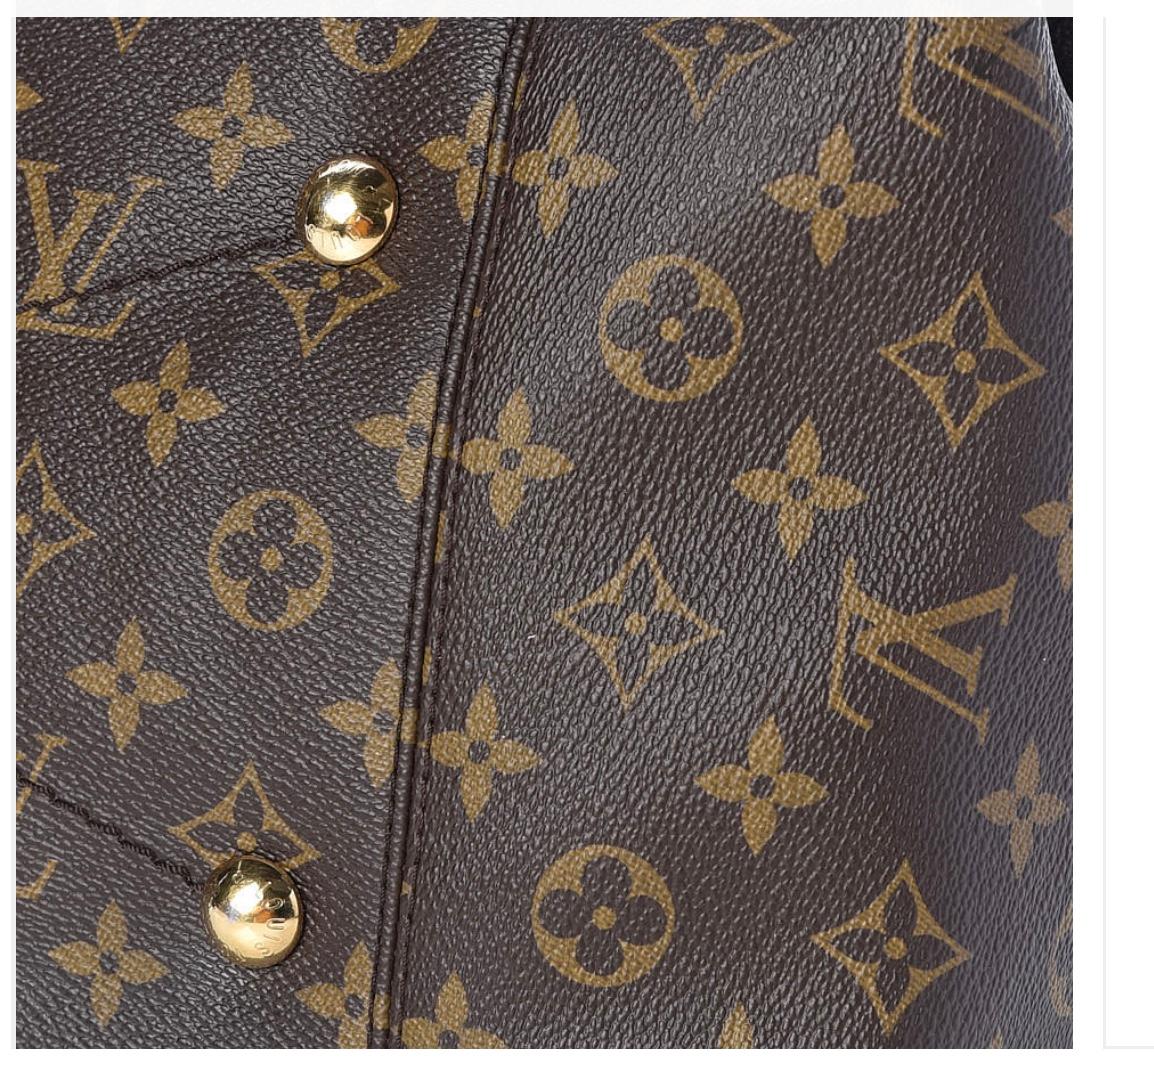 Black Louis Vuitton Artsy MM Brown Monogram Canvas Hobo Shoulder Bag, Great condition